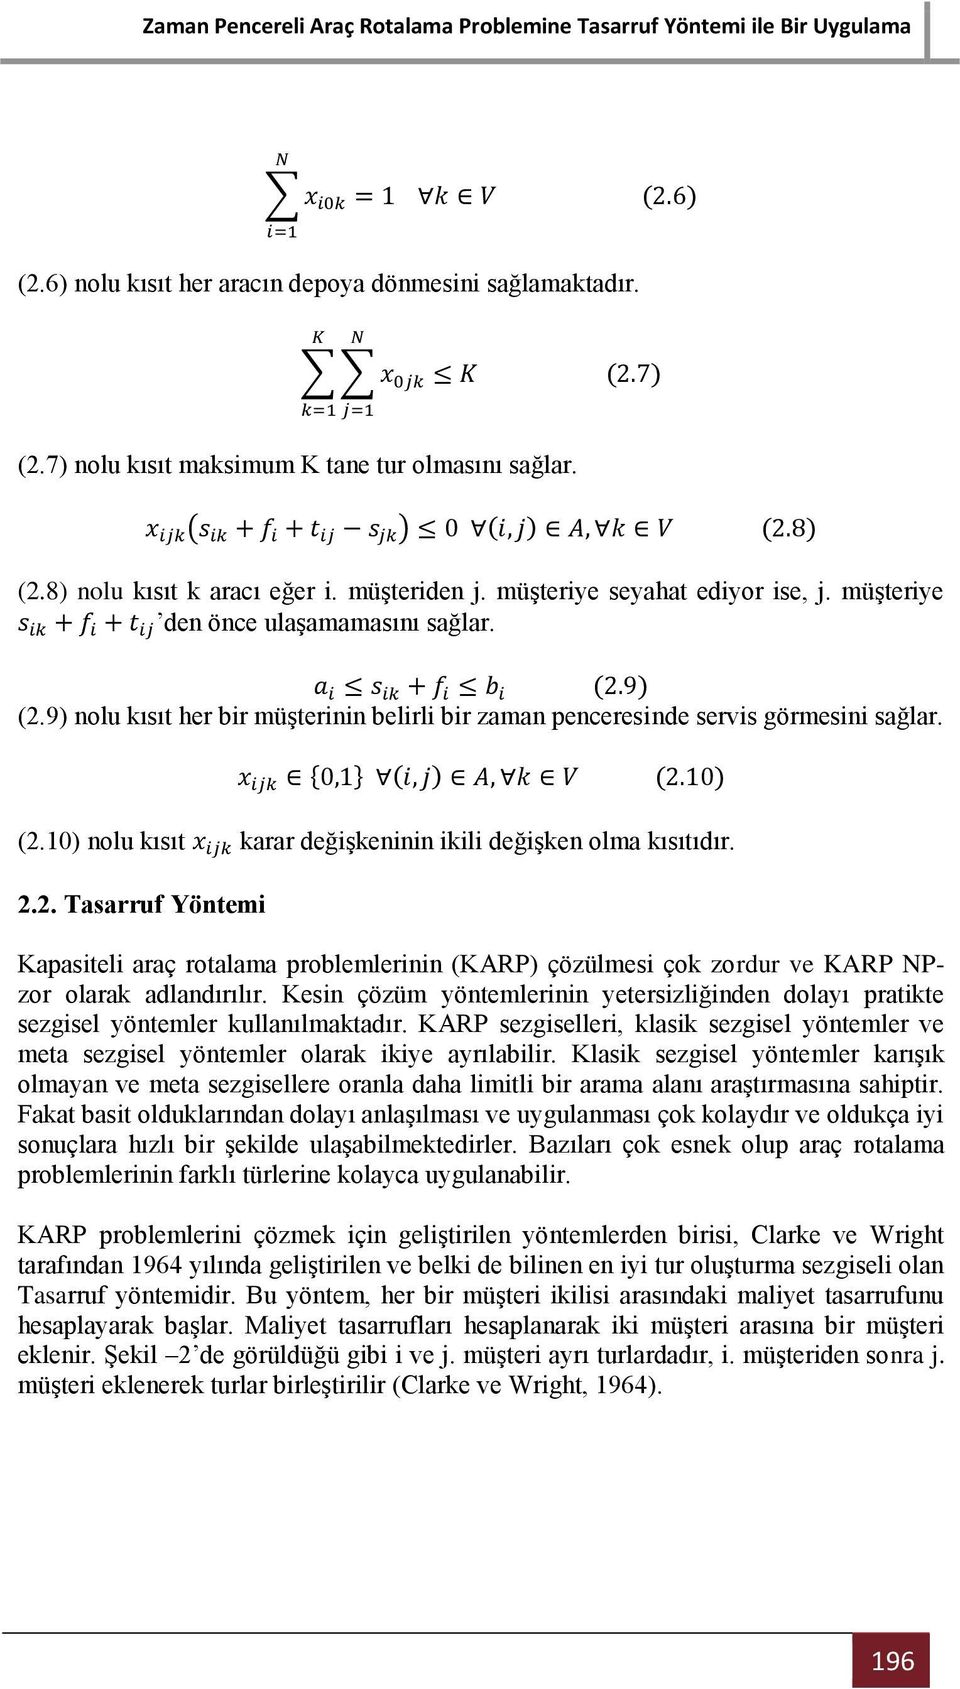 2.2. Tasarruf Yöntemi Kapasiteli araç rotalama problemlerinin (KARP) çözülmesi çok zordur ve KARP NPzor olarak adlandırılır.